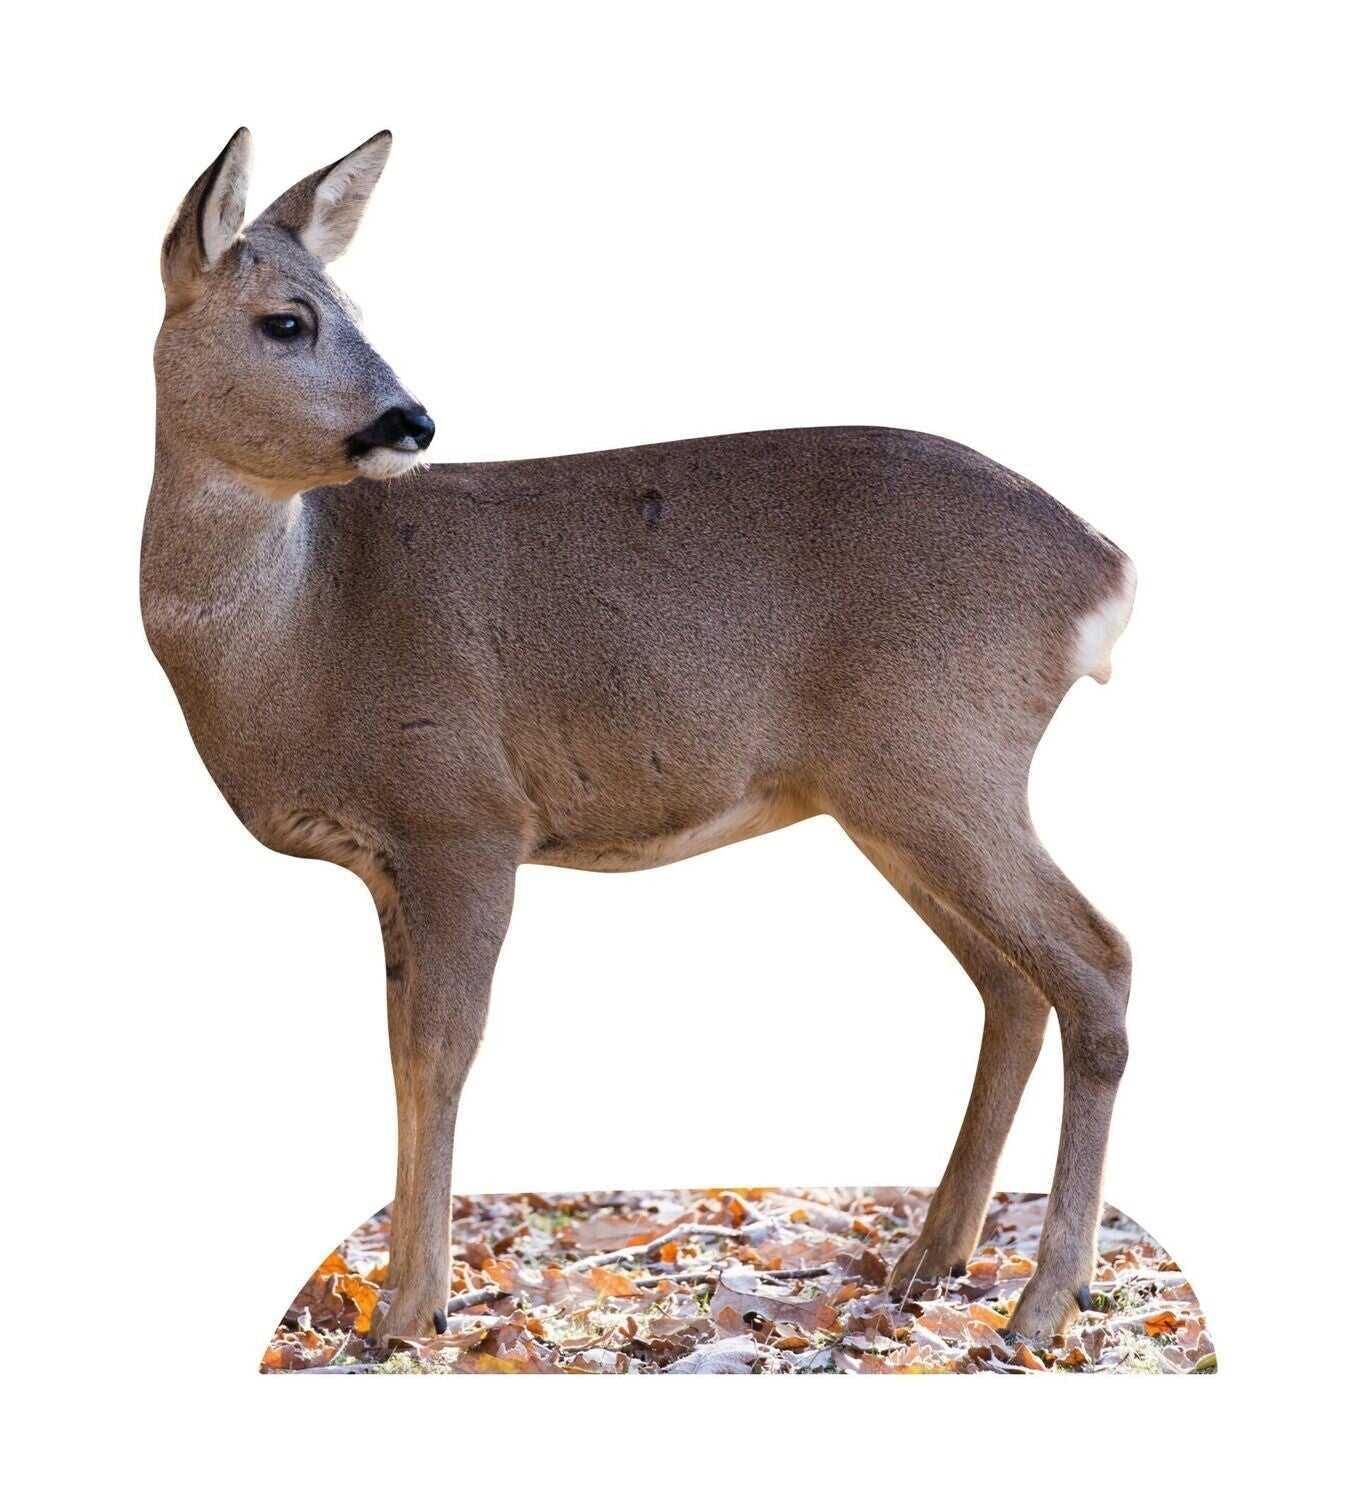 Animal standee deer